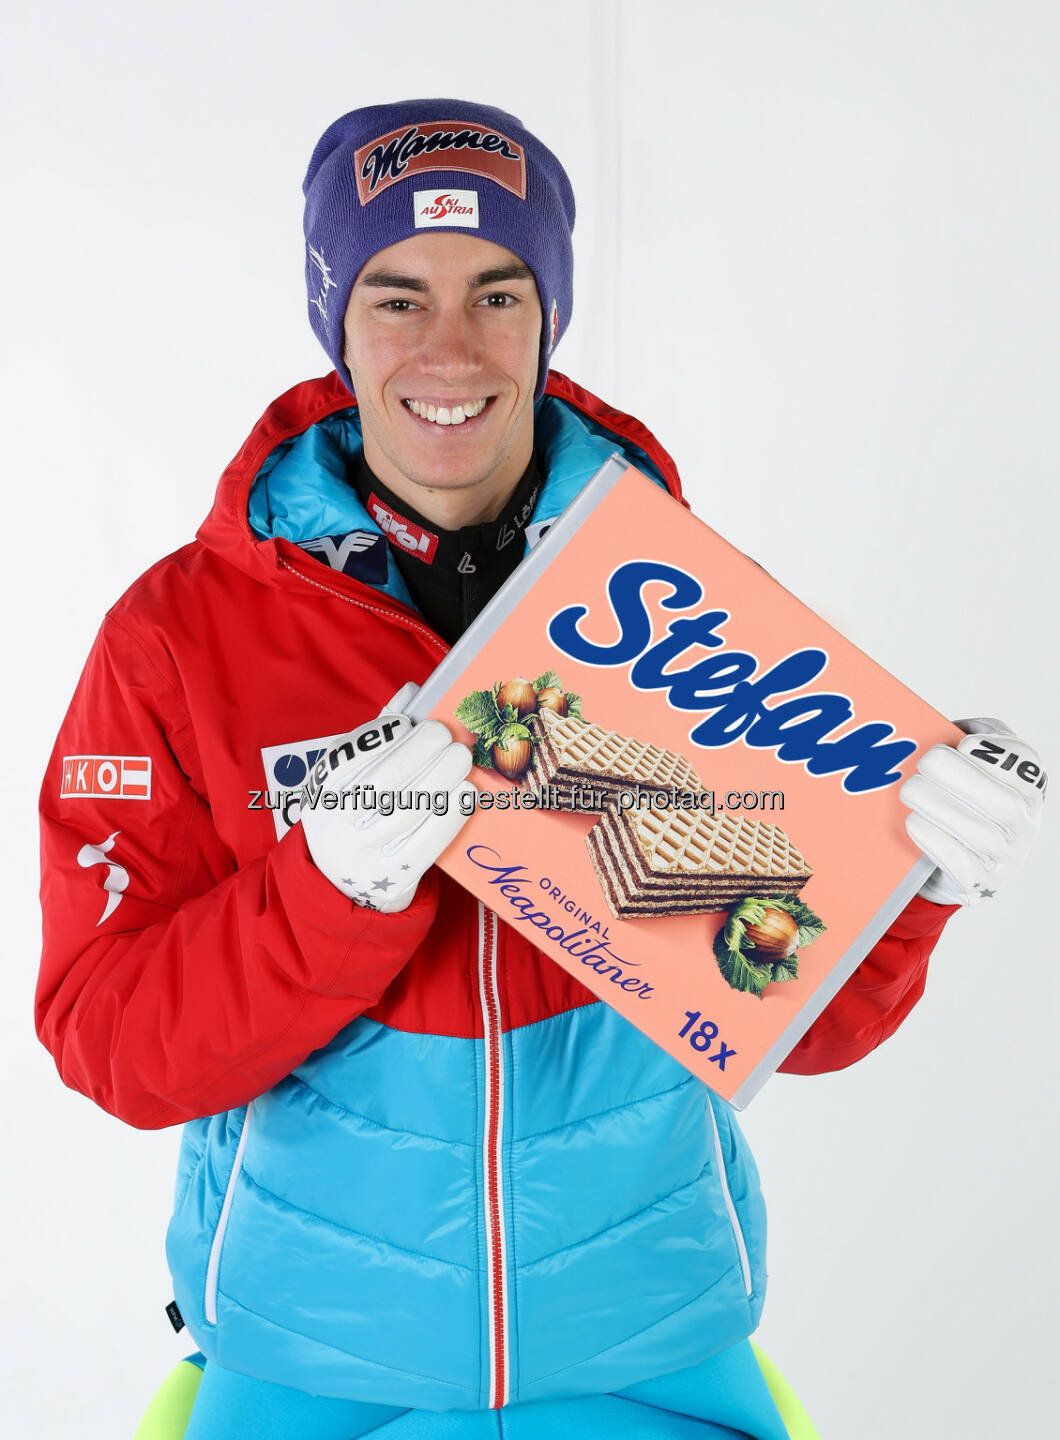 Manner Skispringer Stefan Kraft mit personalisierter Schnitte - Josef Manner & Comp. AG: Es gibt sie wieder: die individualisierbare Schnitte! (Fotocredit: Manner/GEPA)